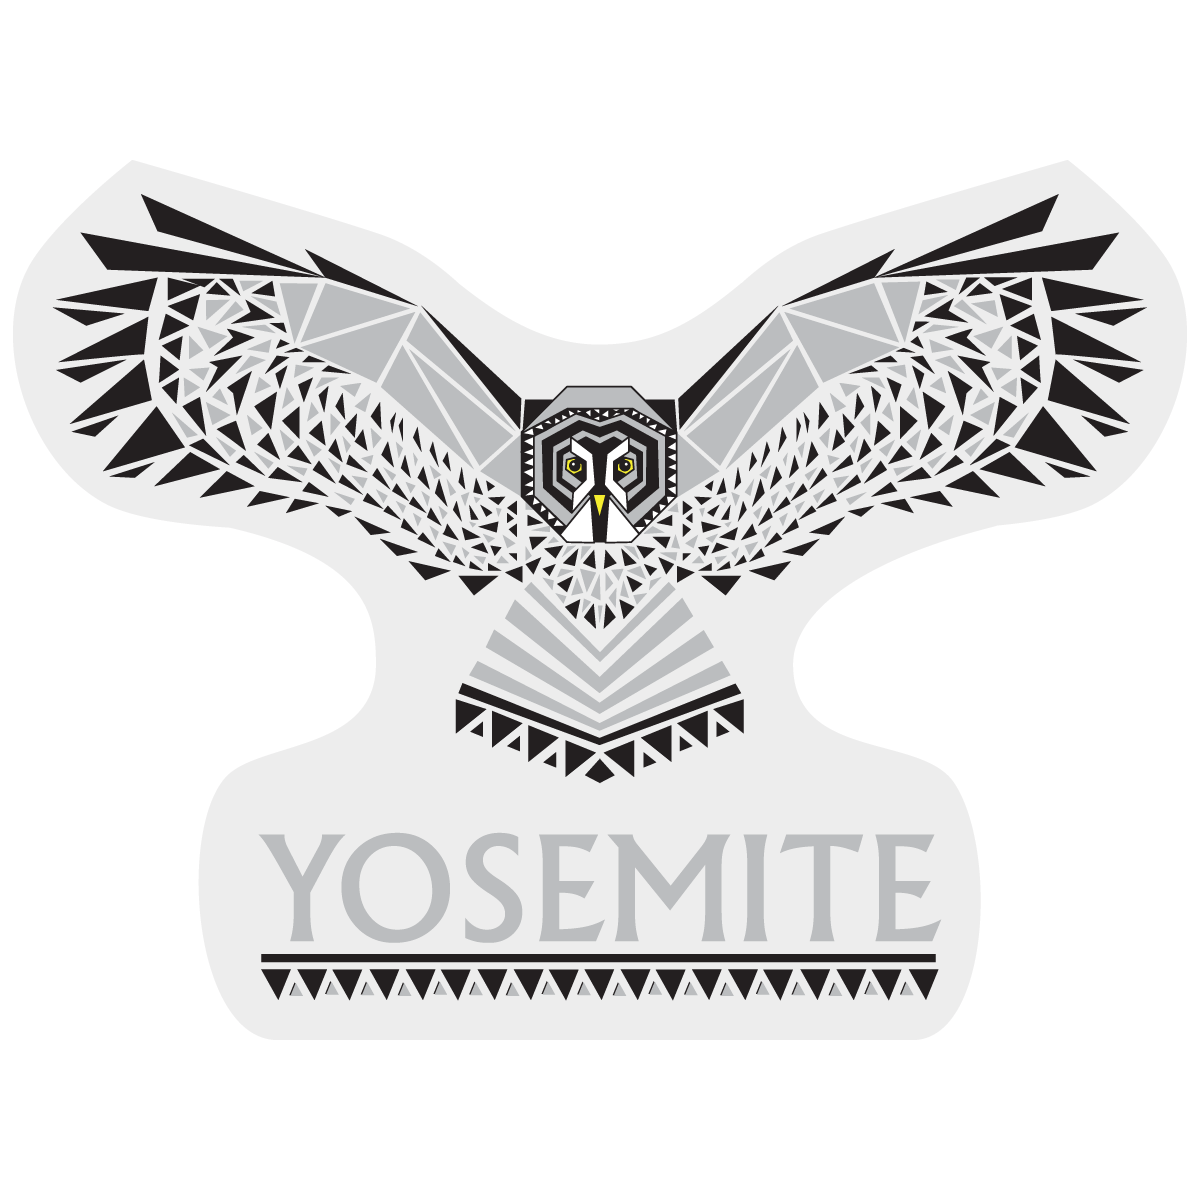 Yosemite Grey Owl Outdoor Decal - Get Deerty